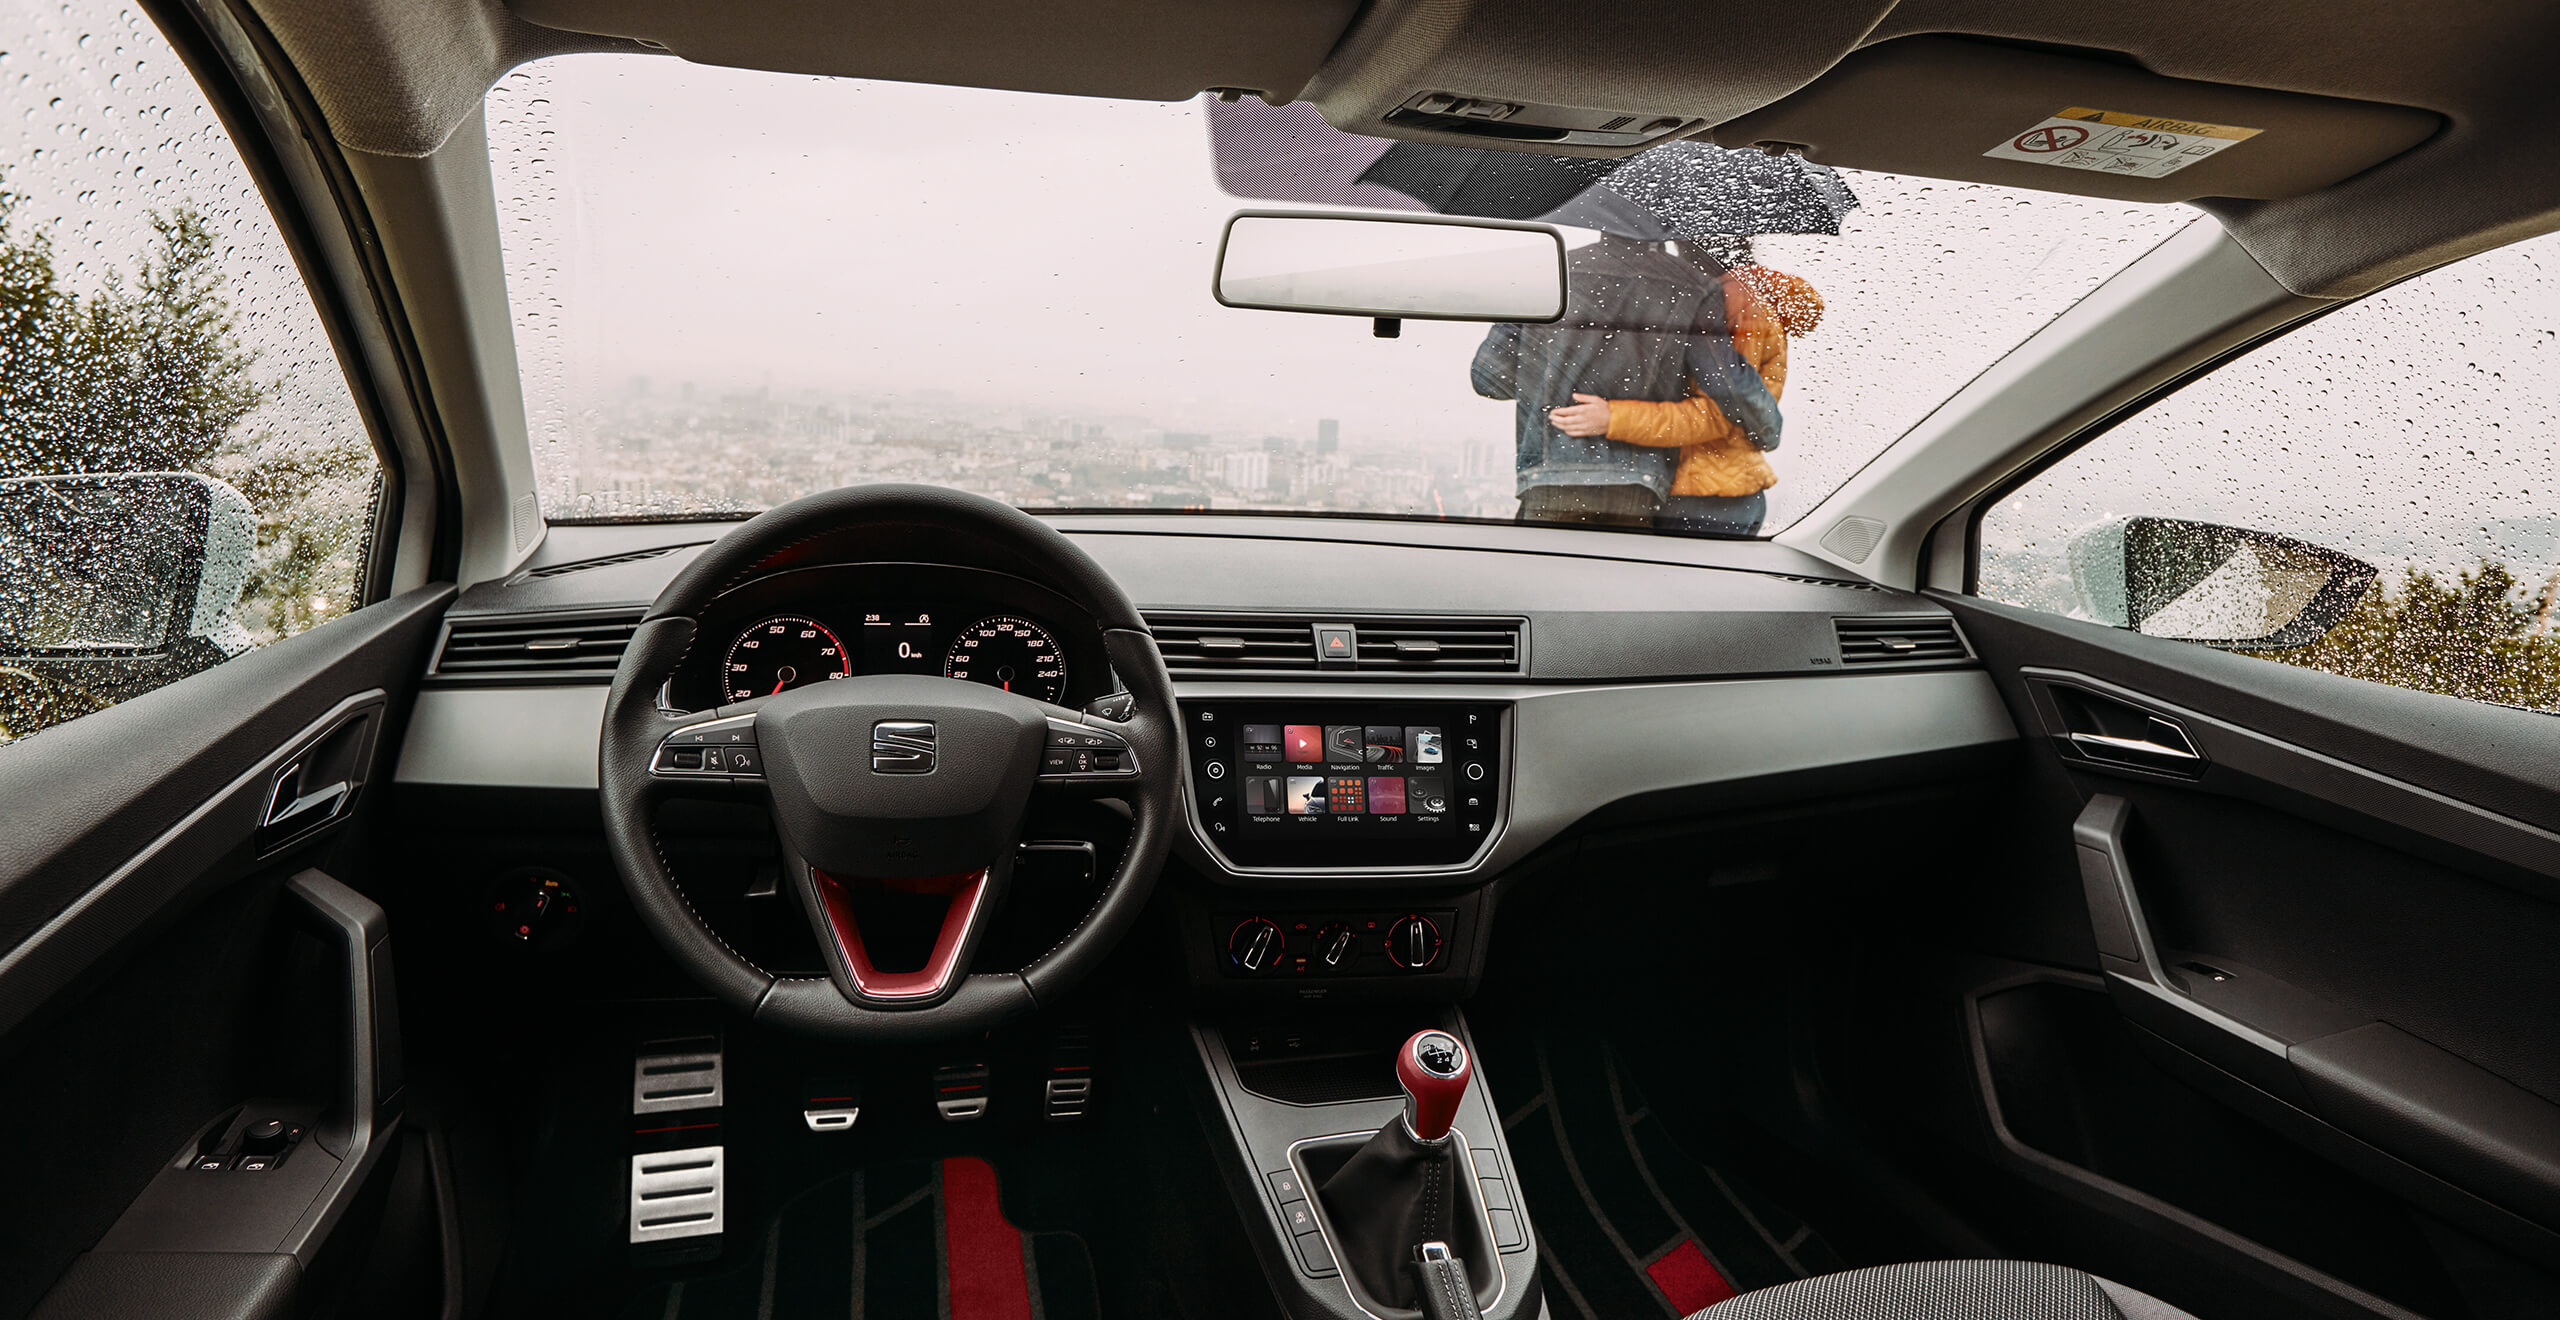 SEAT servizi e manutenzione auto nuove – vista interna del sedile anteriore guidatore e passeggero di una SEAT